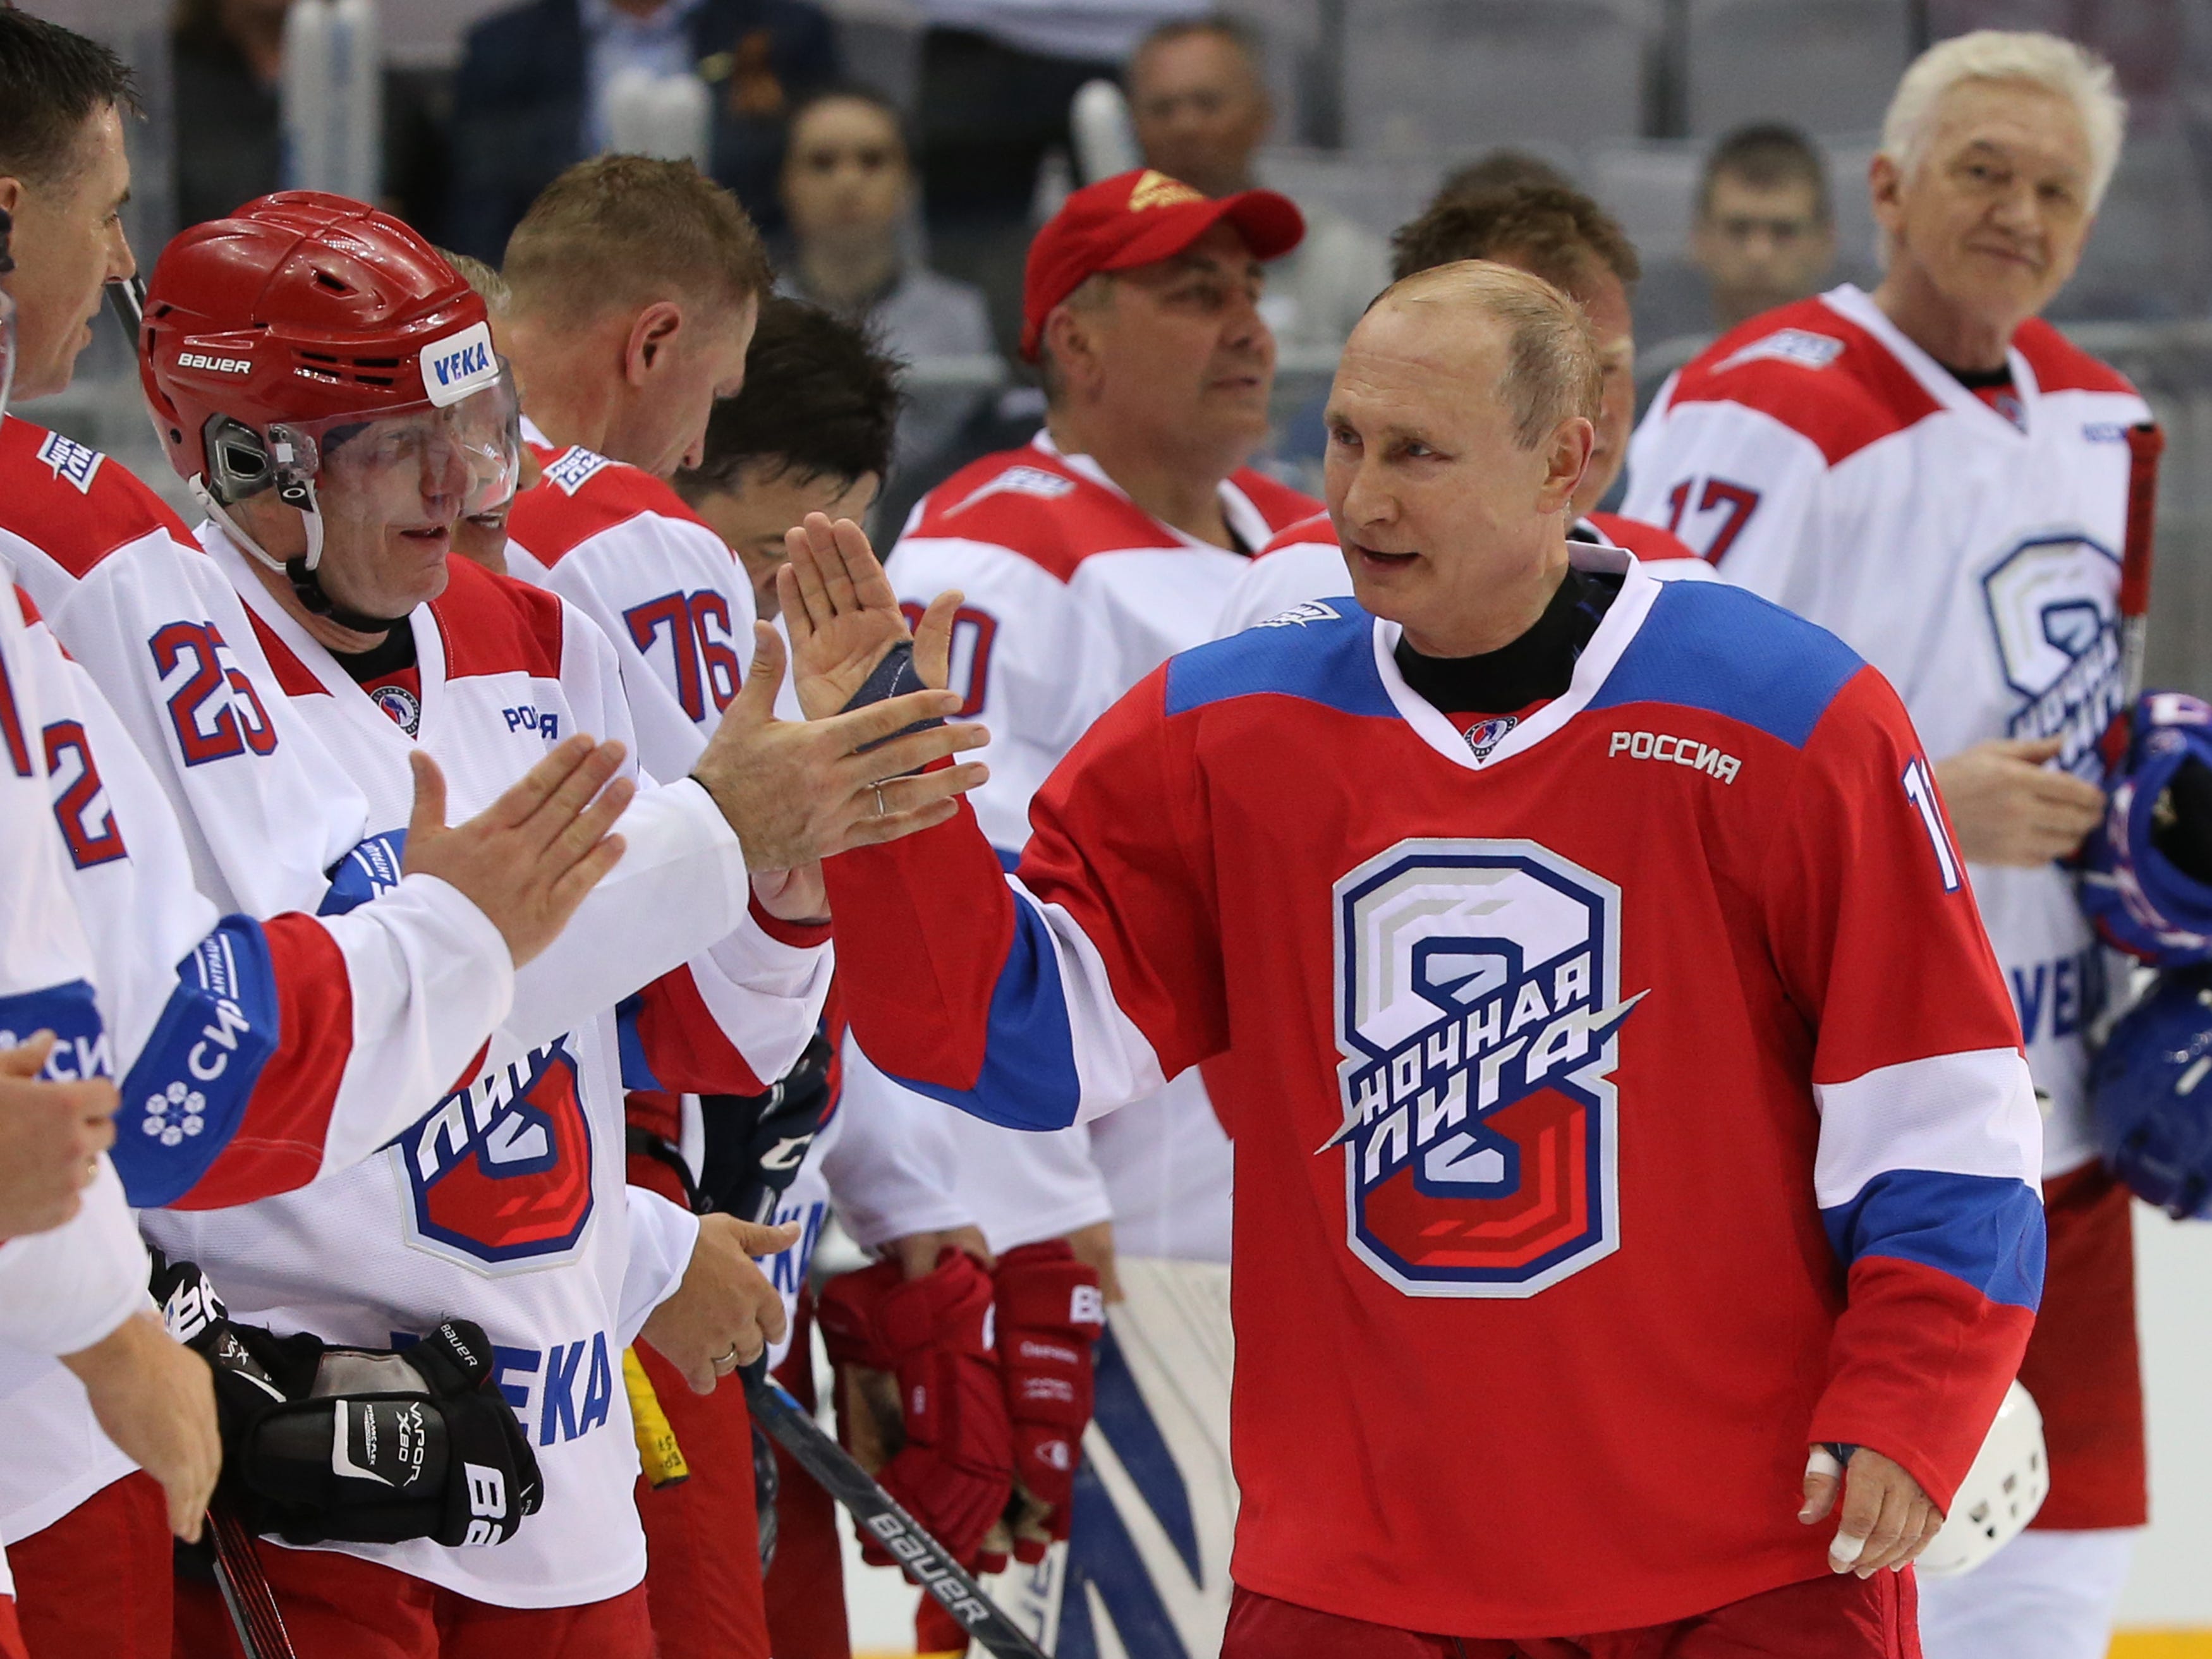 Der russische Präsident Wladimir Putin (Mitte) begrüßt den Milliardär und Geschäftsmann Wladimir Potanin (L), während der Milliardär Gennadi Timtschenko (R) während eines Gruppenfotos beim Galaspiel der Night Hockey League im Bolschoi Ice Dome in Sotschi, Russland, am 10. Mai zuschaut , 2019.